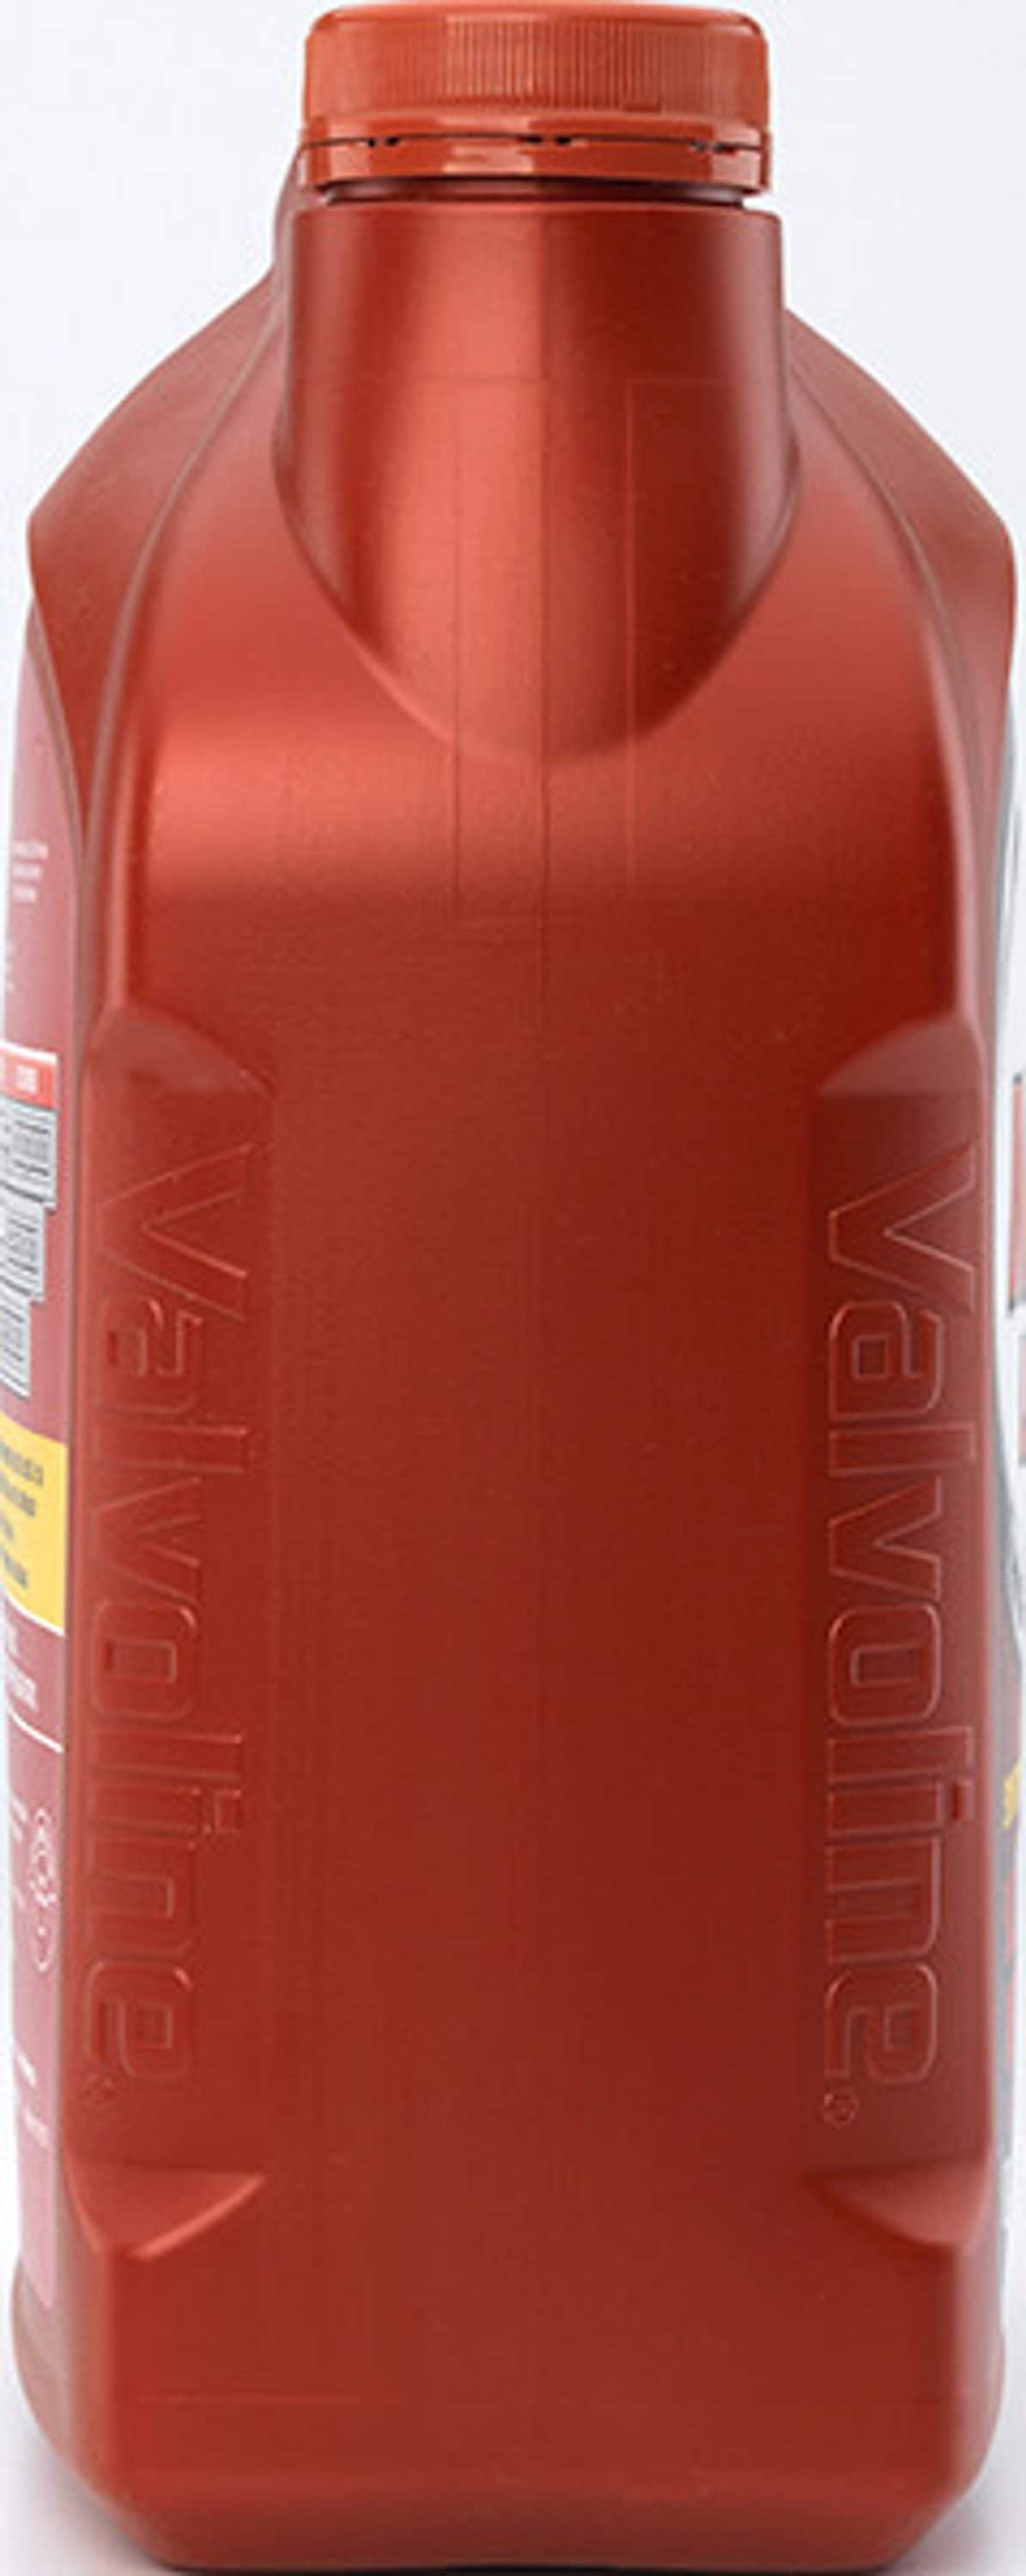 Valvoline ATF Dexron VI/Mercon LV Full Synthetic , 1 Gallon